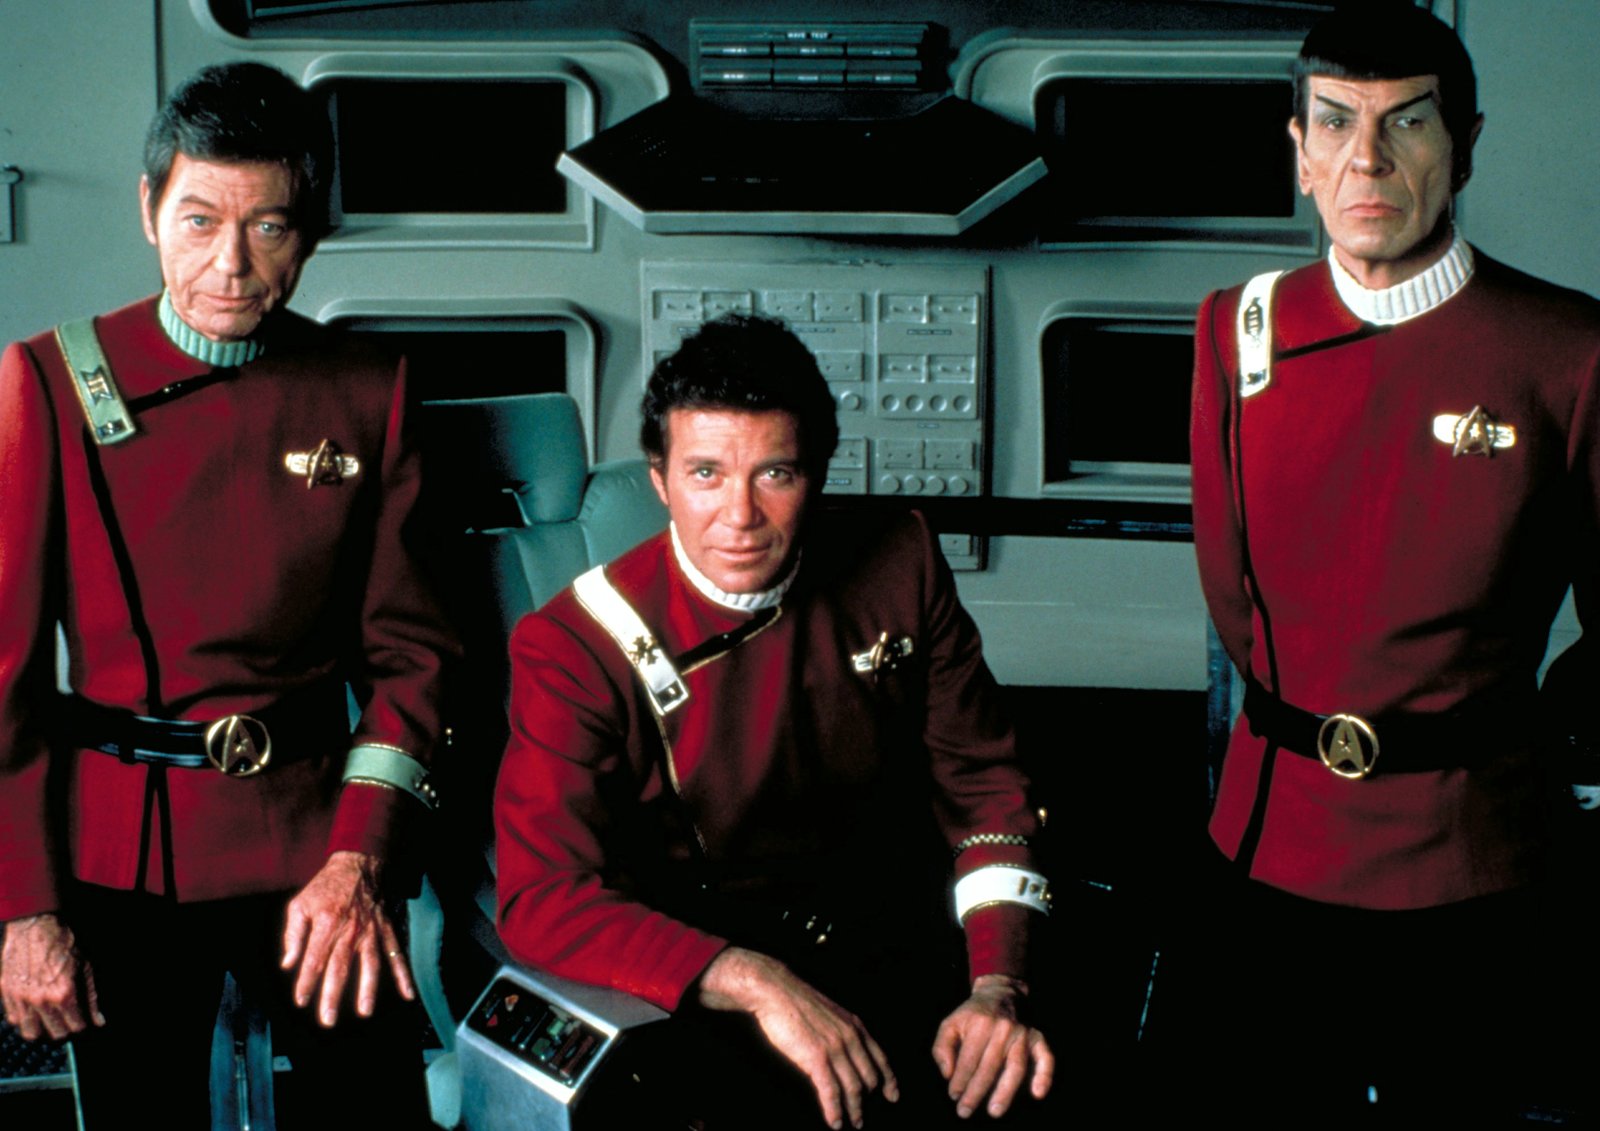 Star Trek 2 - Der Zorn des Khan (4K Ultra HD)